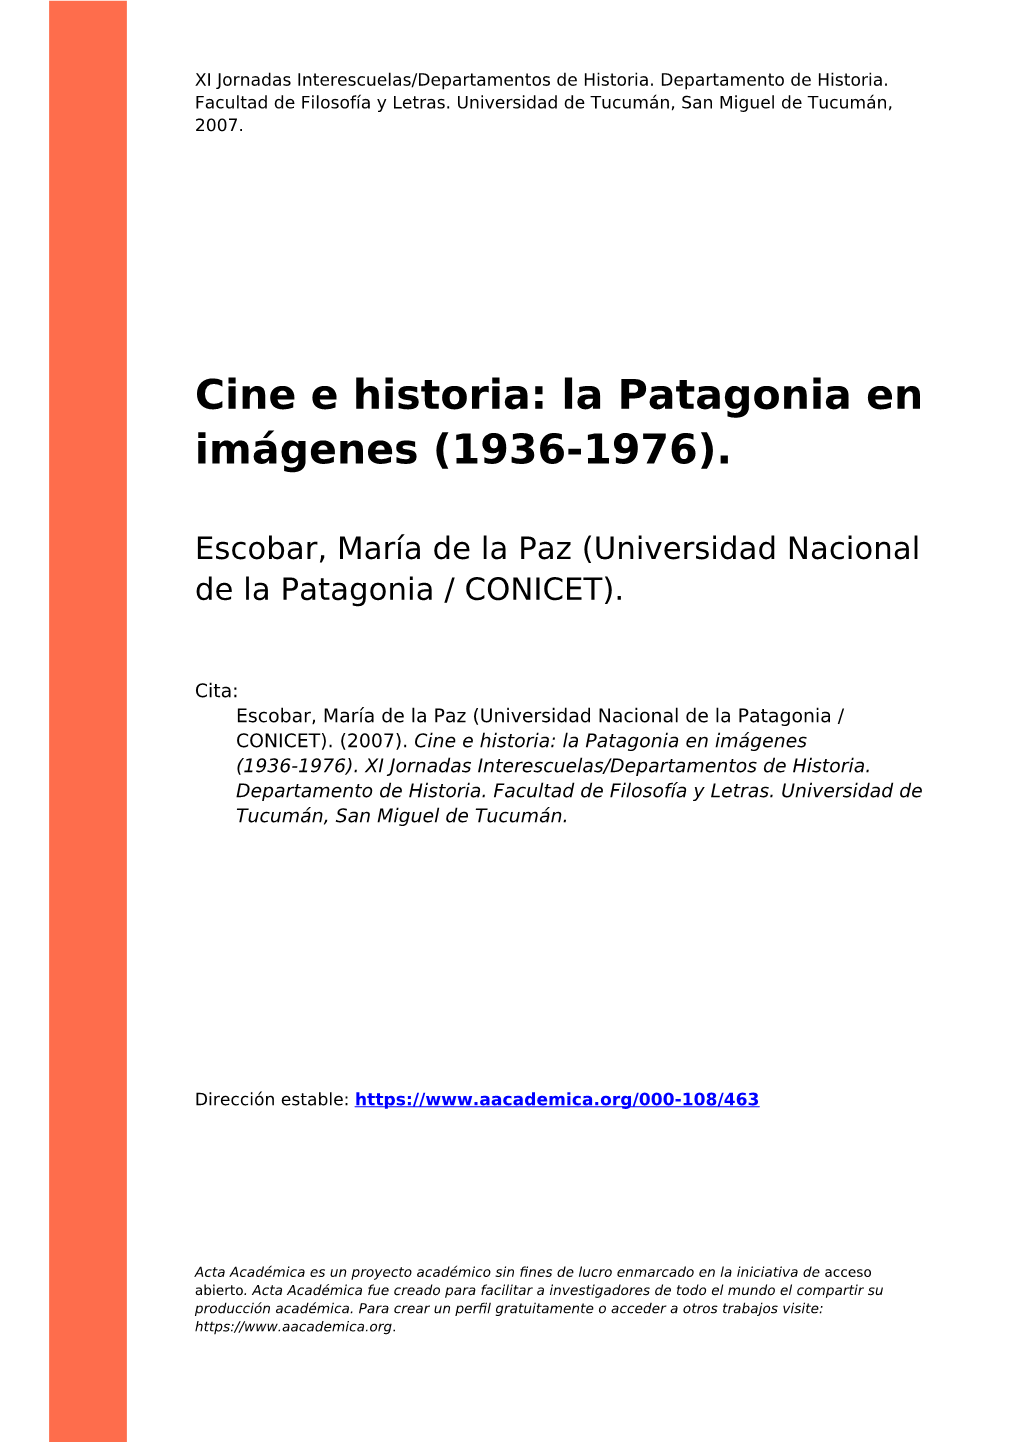 Cine E Historia: La Patagonia En Imágenes (1936-1976)